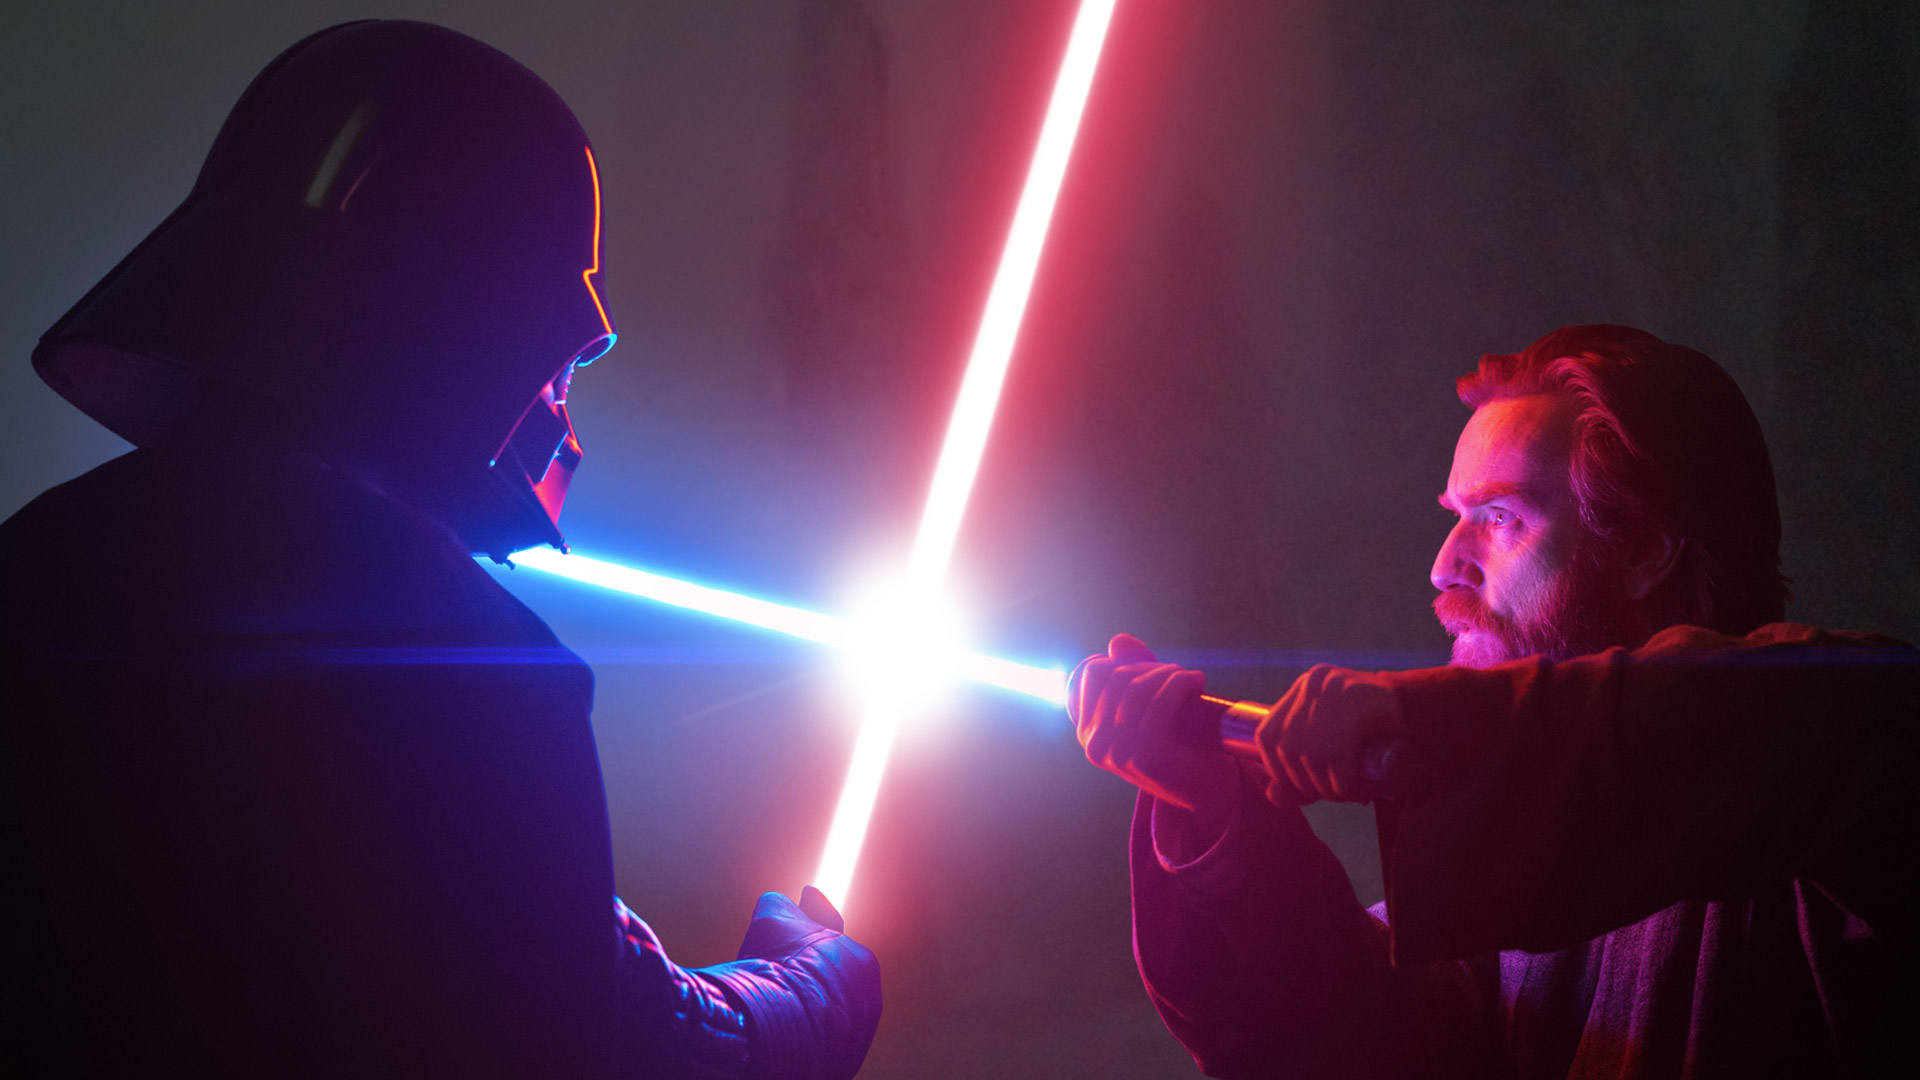 Darth Vader and Obi-Wan duel